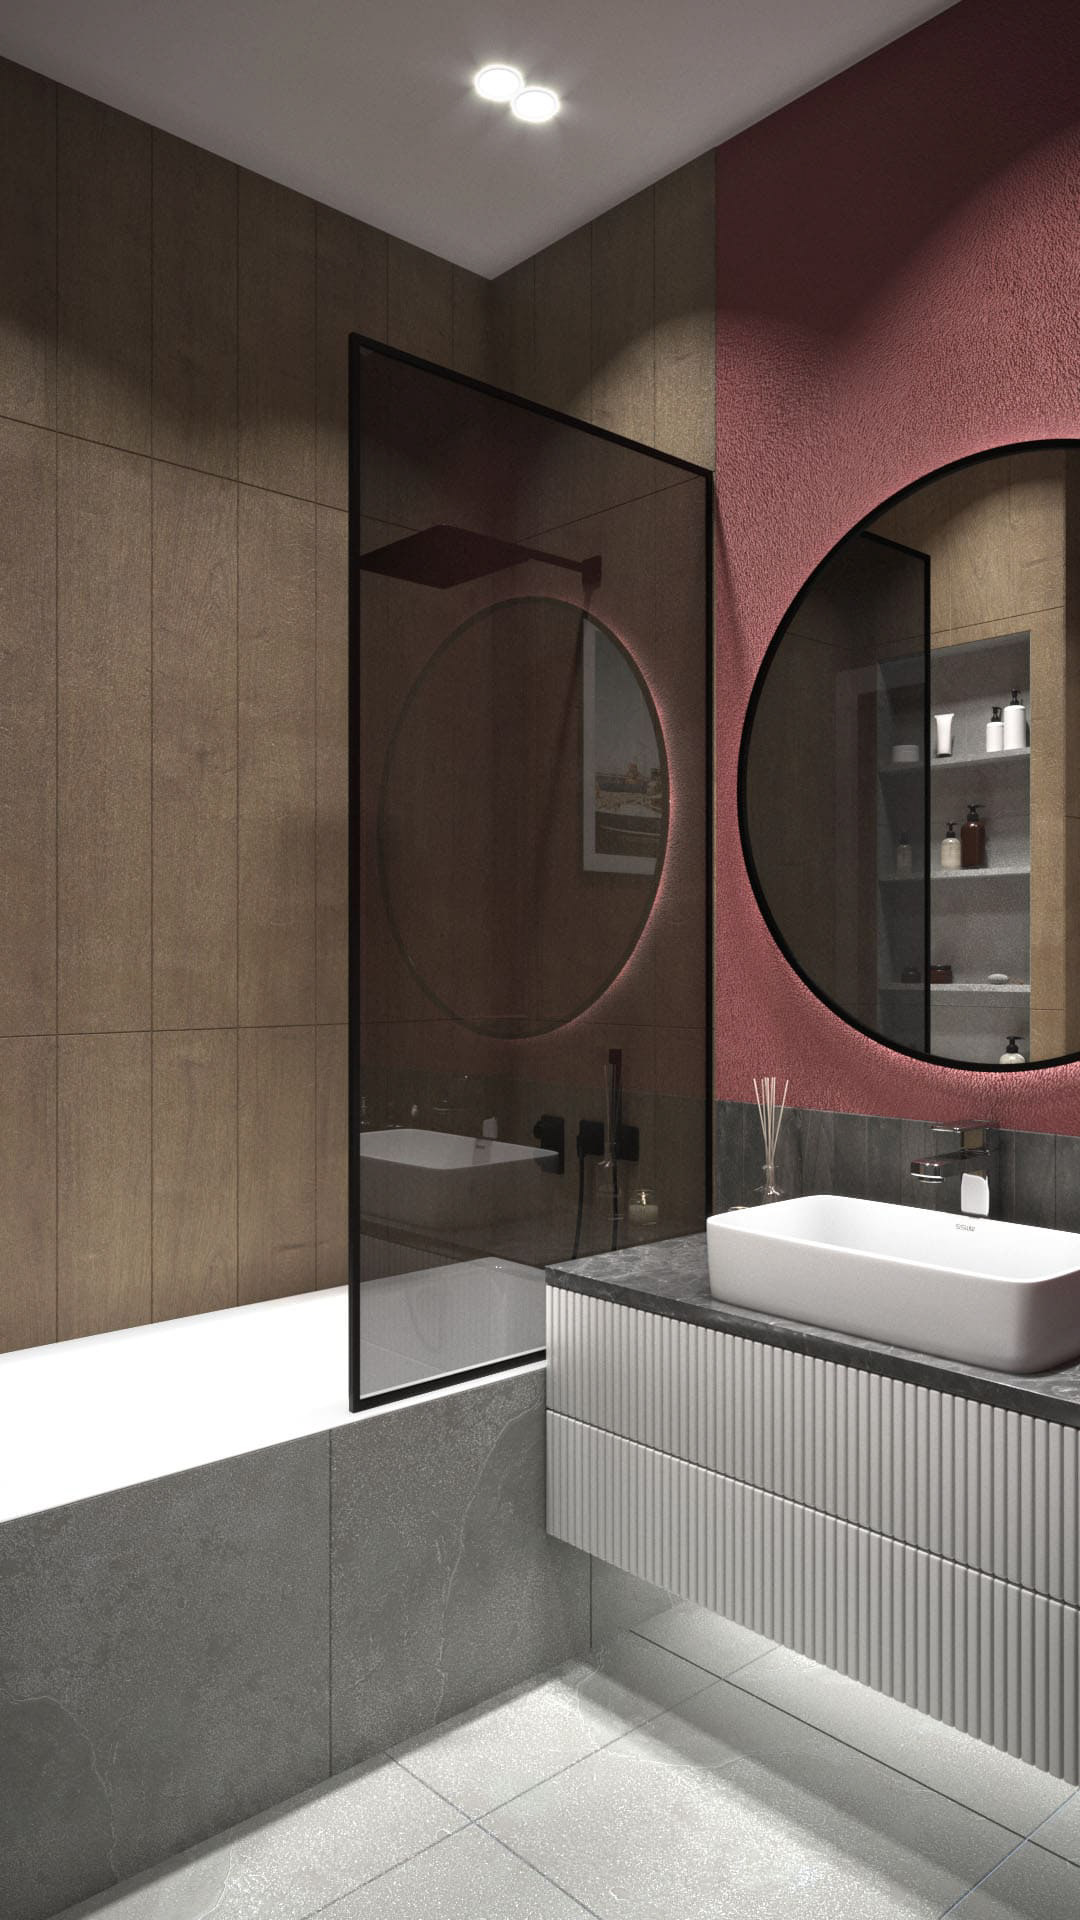 3ds max Interior interior design  визуализация гостиная   дизайн дизайн интерьера интерьер кухня кухня-гостиная